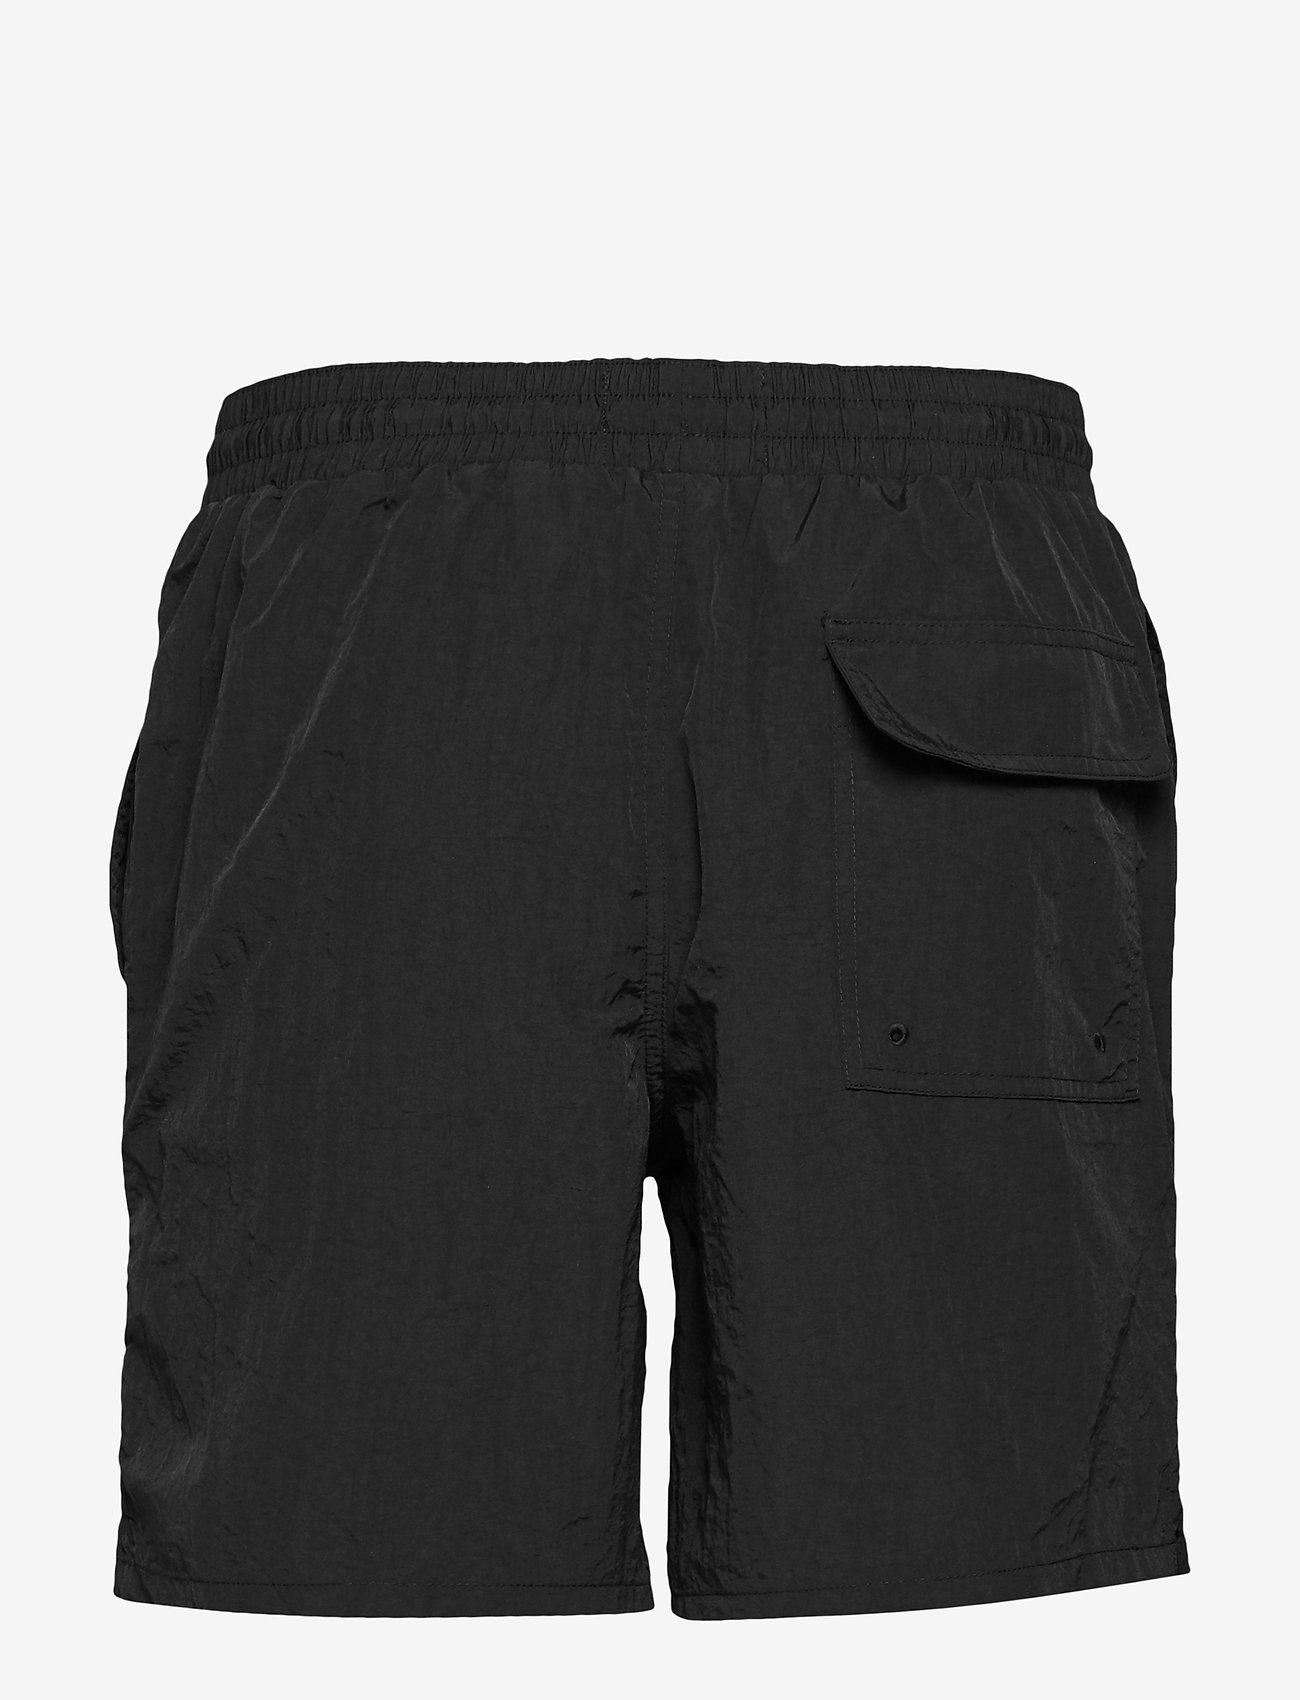 Lyle & Scott - Plain Swim Short - shorts - jet black - 1